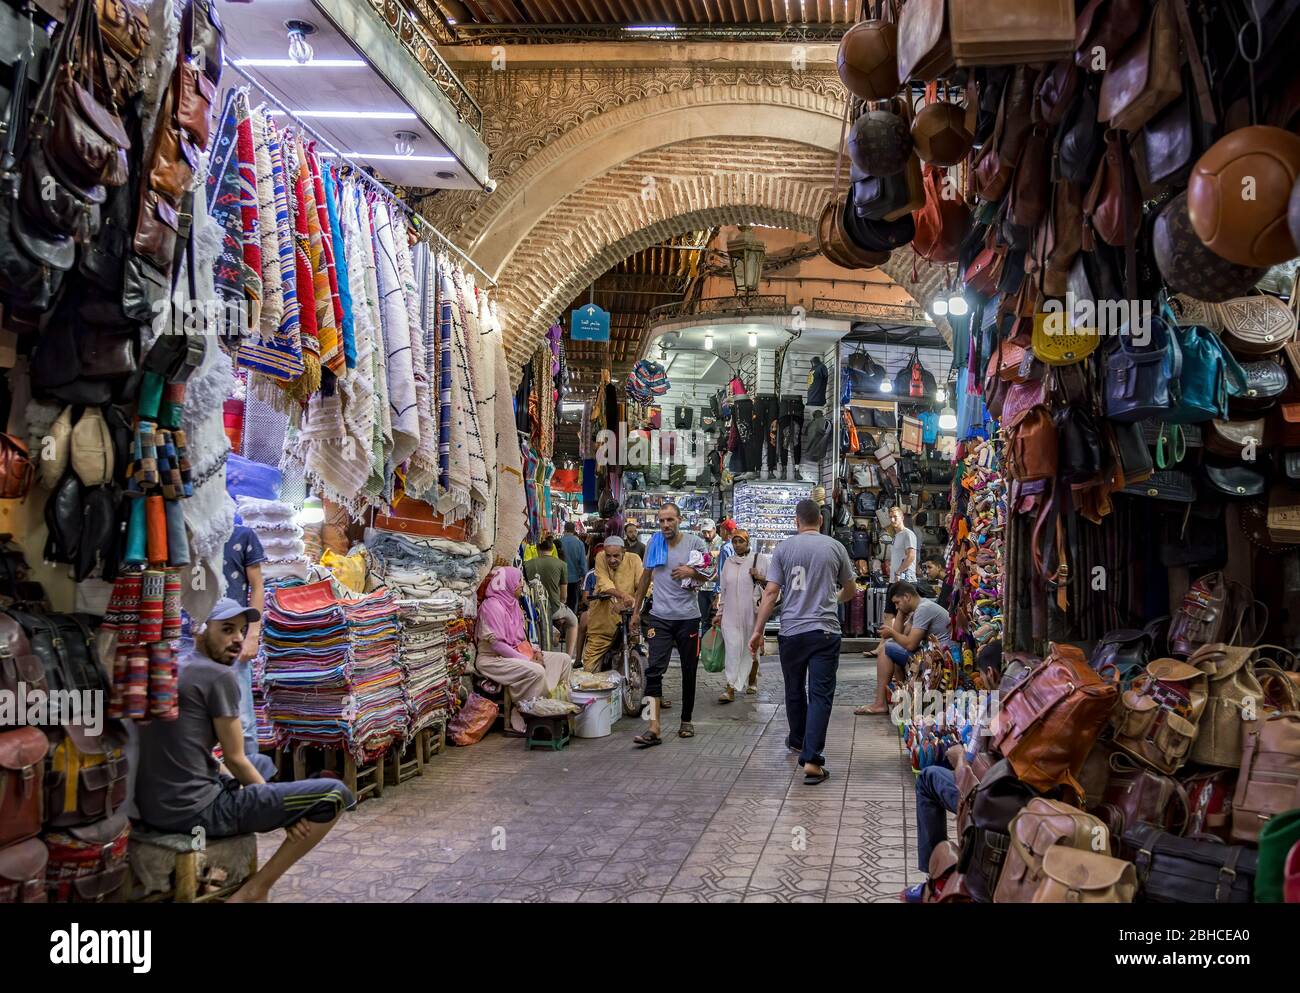 Typische Straßenansicht des Medina Bazaar von Marrakesch in Marokko. Voll mit hängenden Waren. Lieferanten und Käufer. Stockfoto